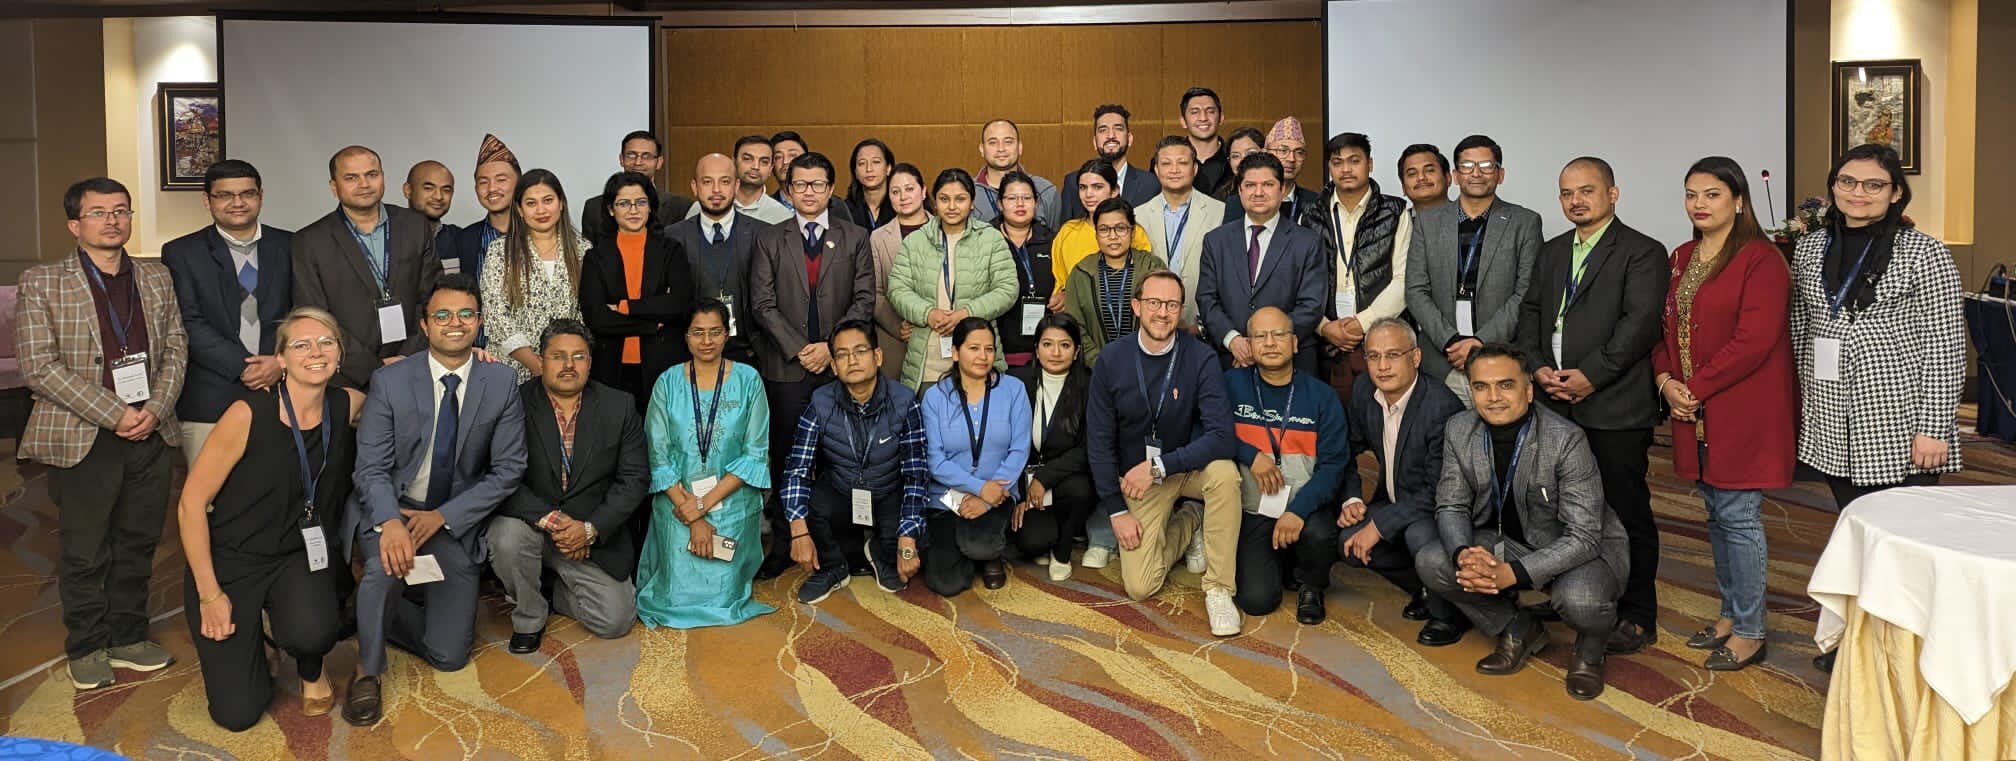 Mehrere Teilnehmer des Schlaganfall-Symposium in Nepal posieren für ein Foto